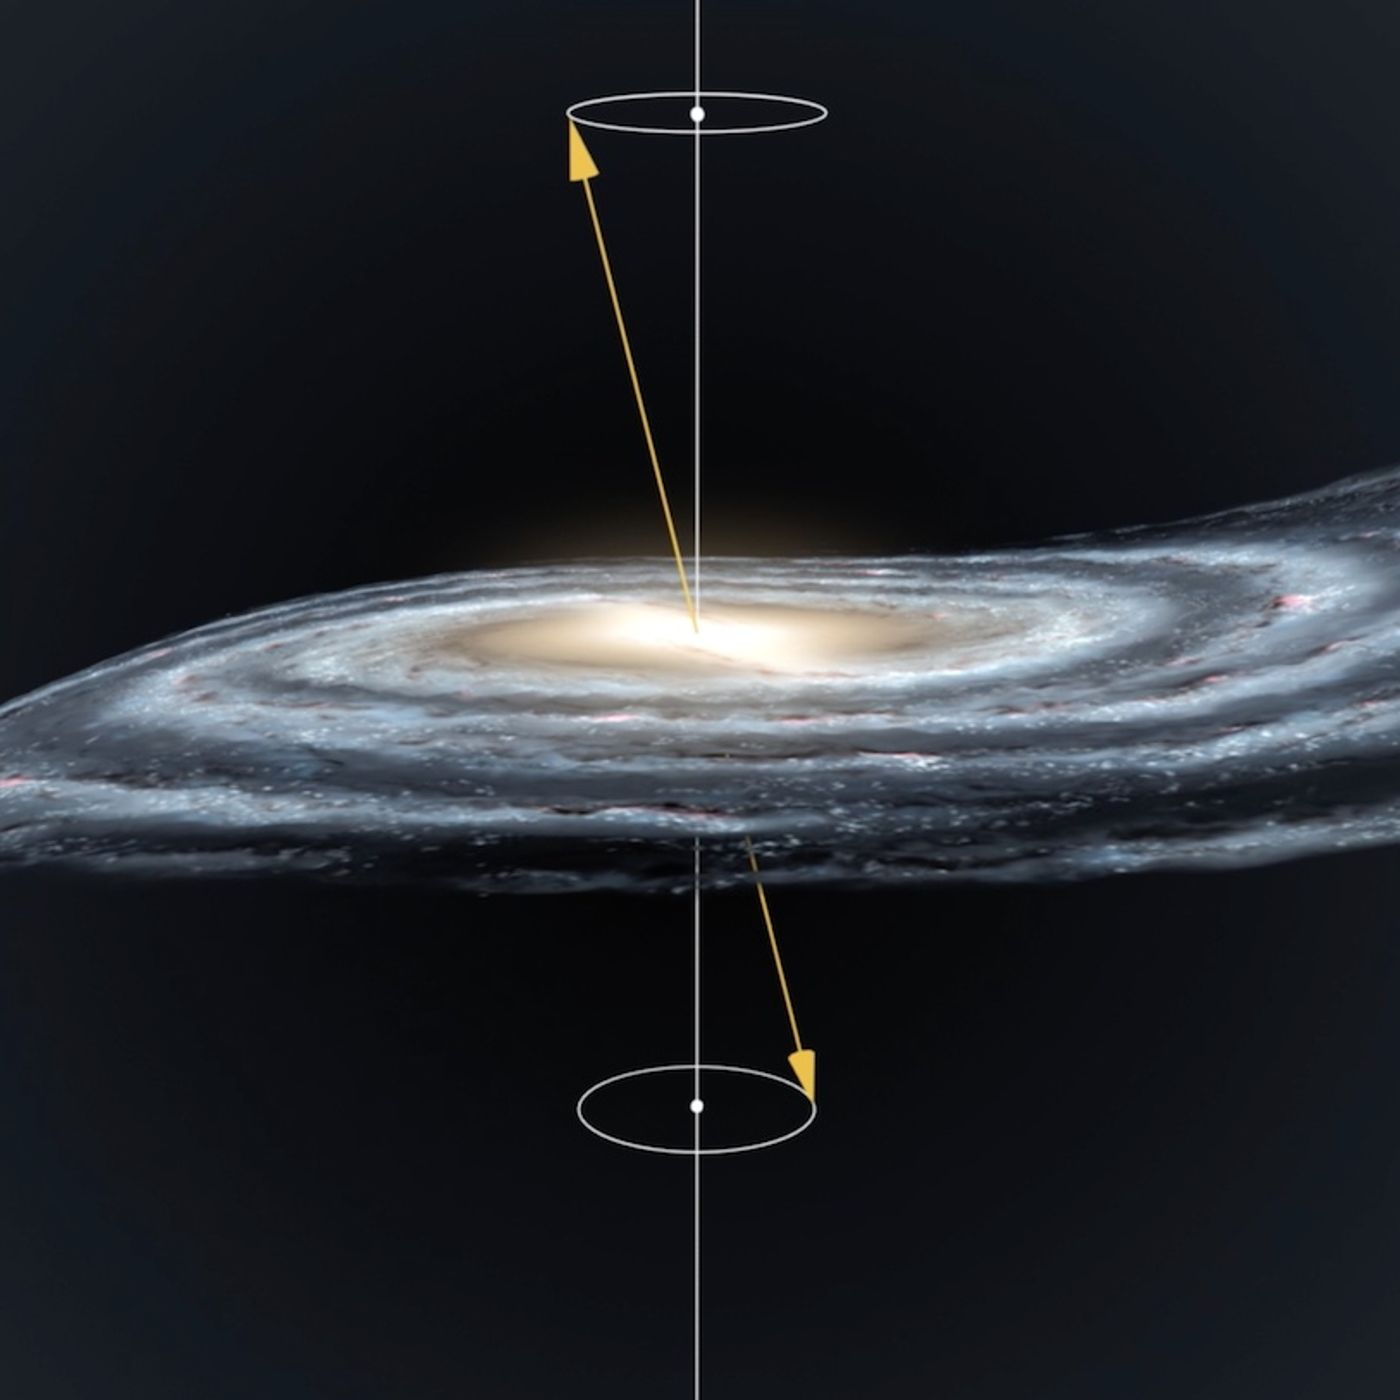 La Via Lattea è una trottola cosmica?